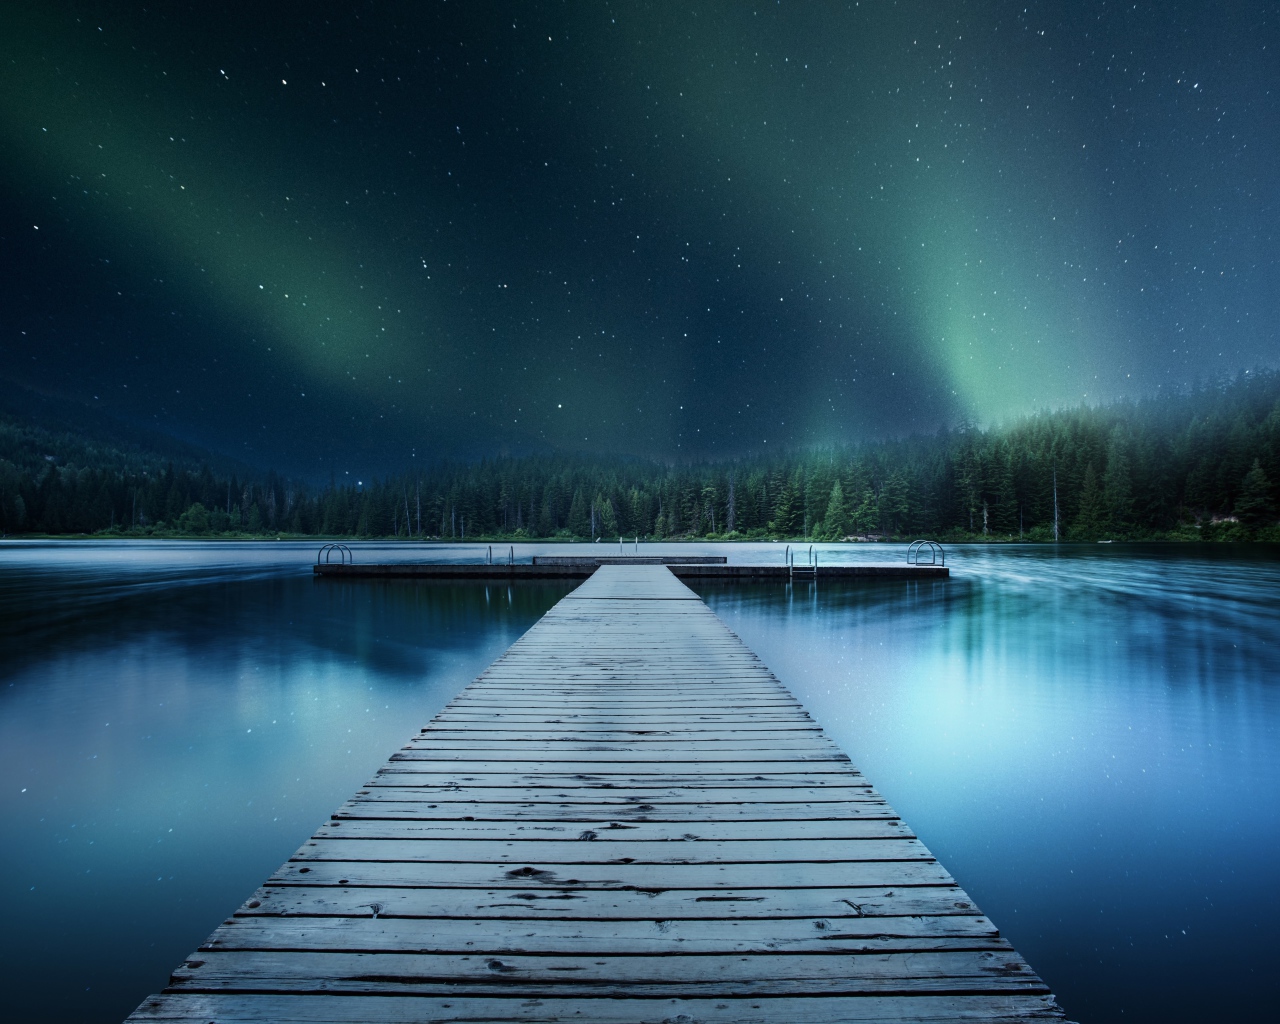 Деревянный мост на озере под красивым ночным небом